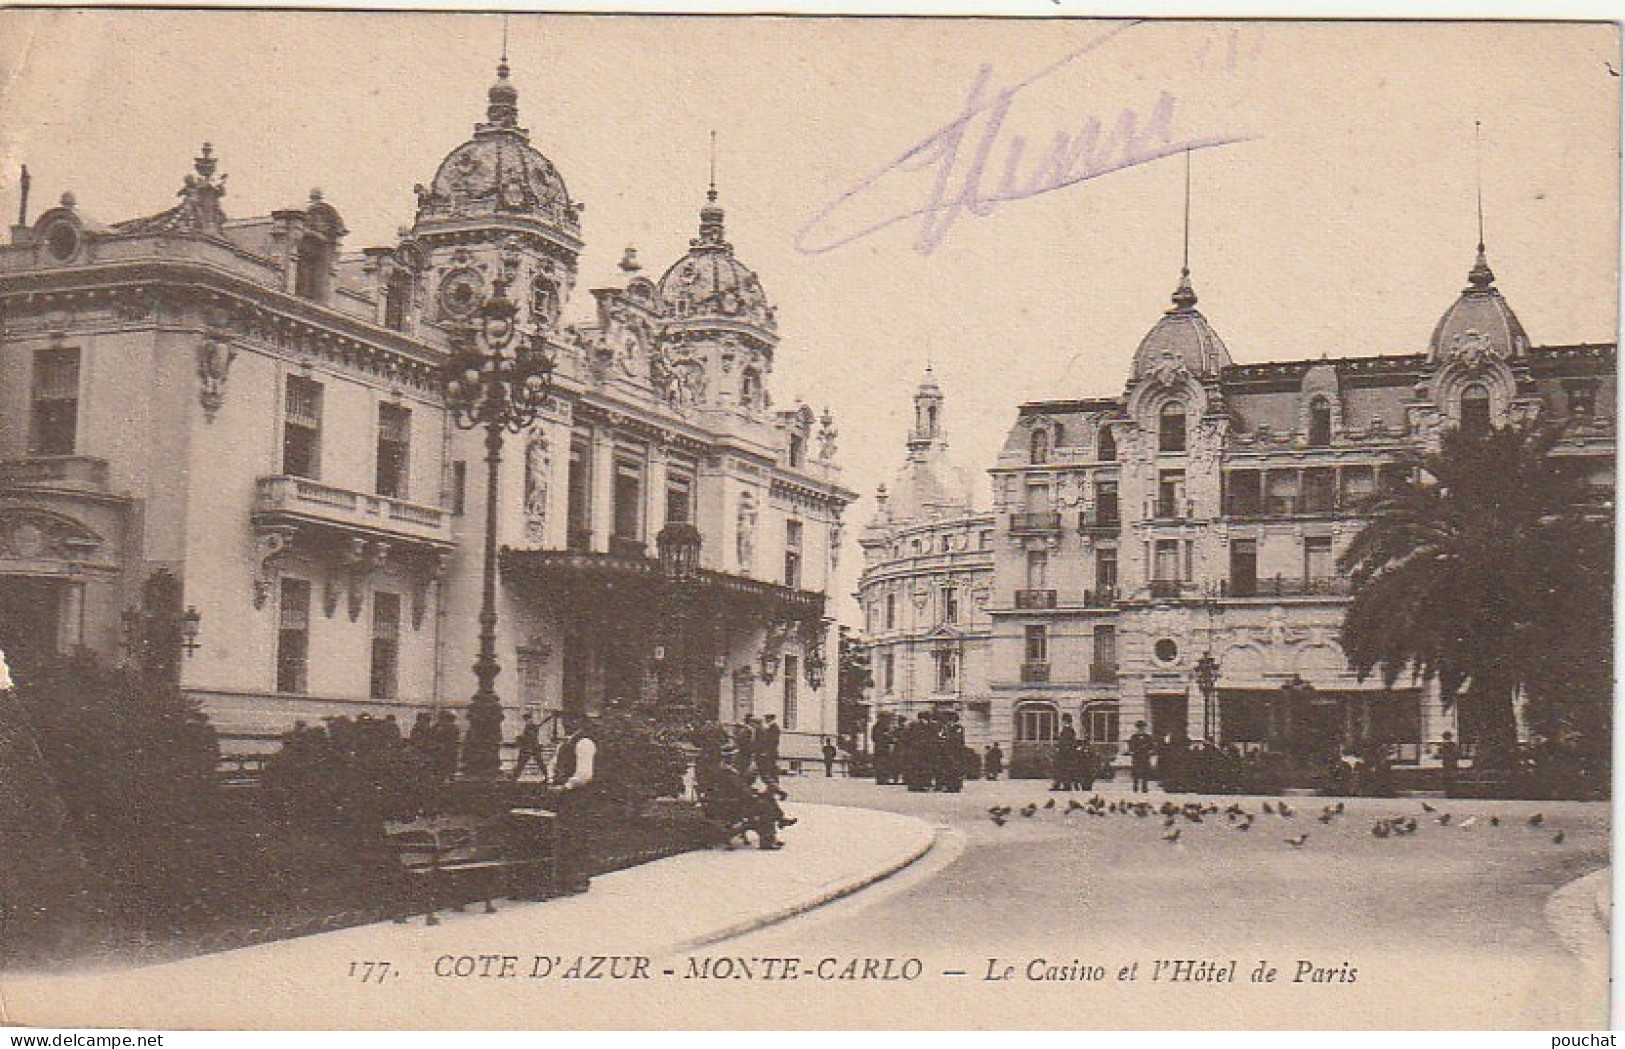 MO 14 - MONTE CARLO - LE CASINO ET L' HOTEL DE PARIS - 2 SCANS - Hôtels